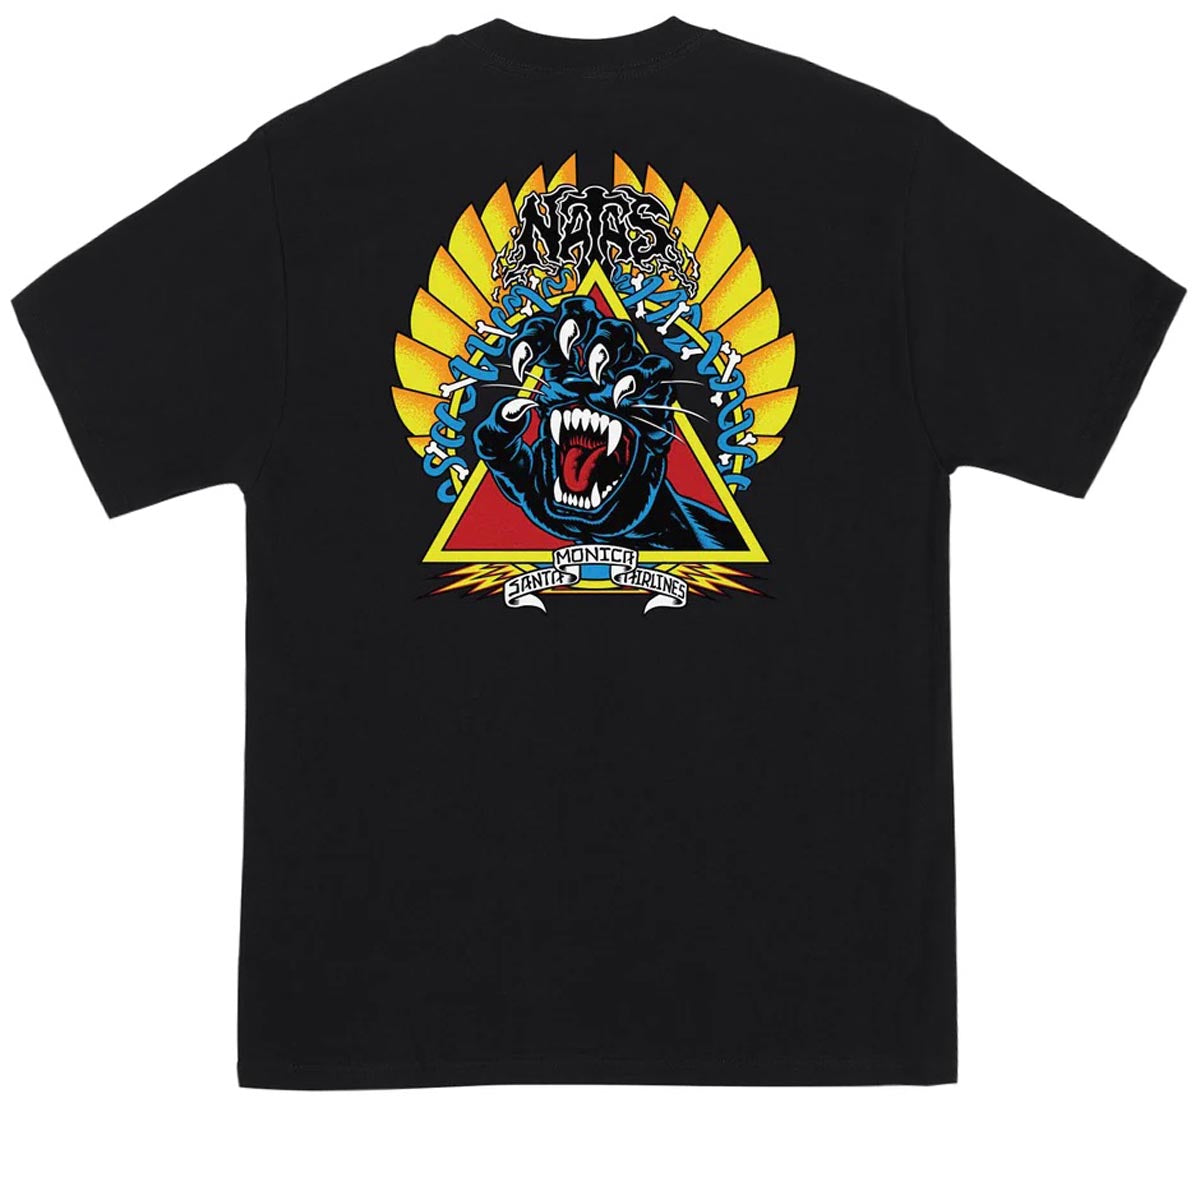 Santa Cruz Natas Screaming Panther T-Shirt - Black image 1